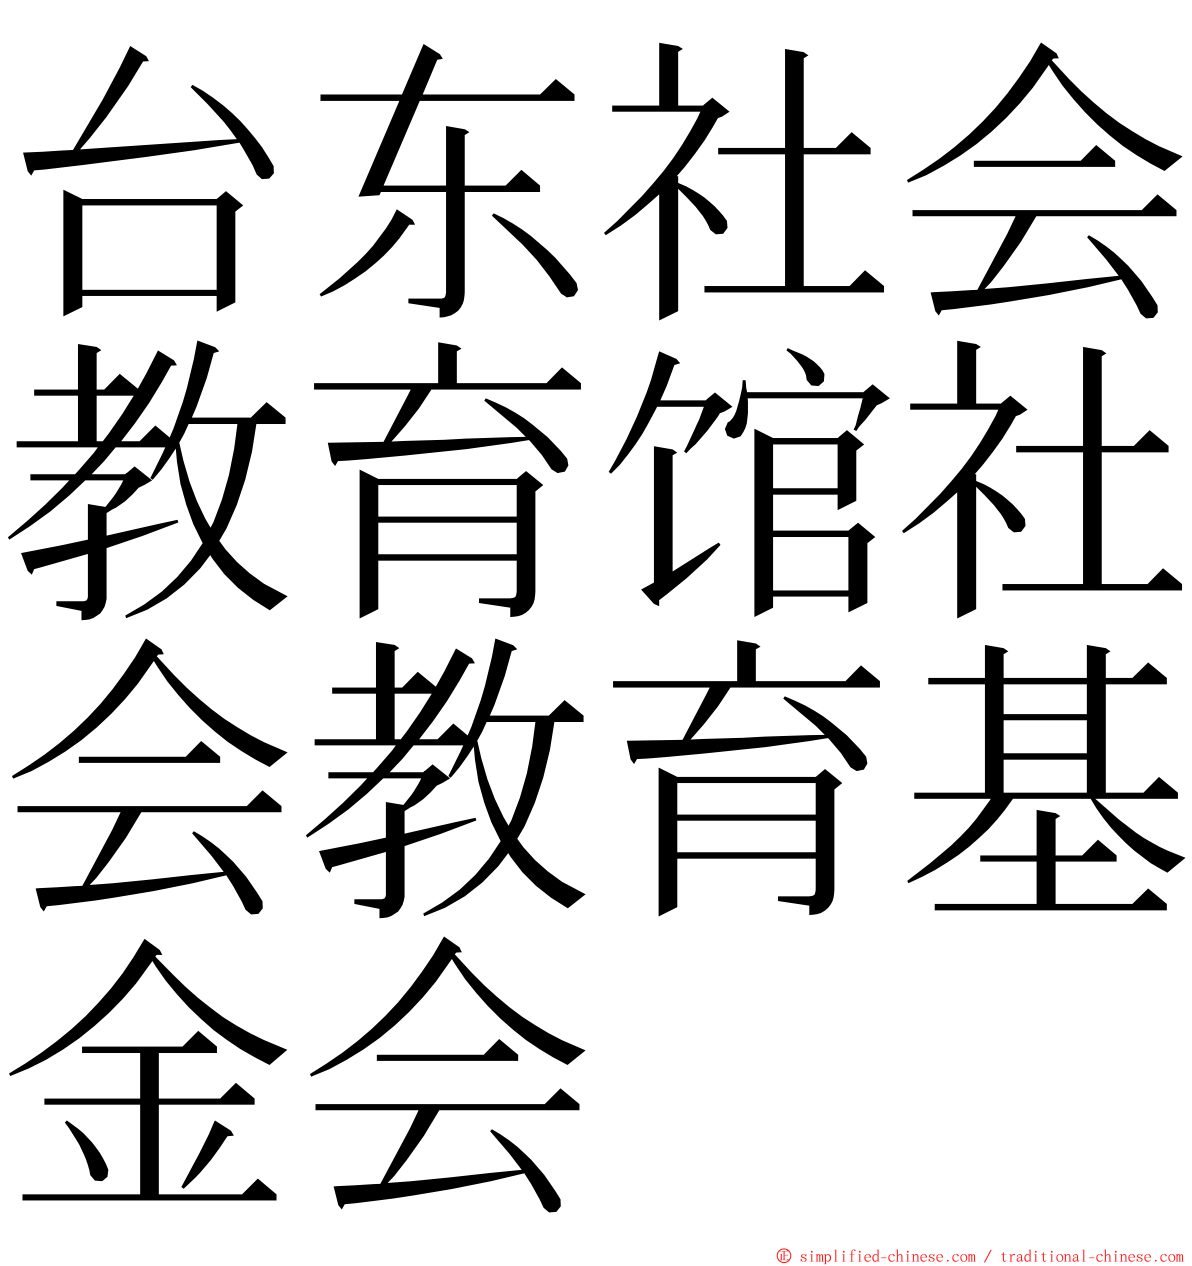 台东社会教育馆社会教育基金会 ming font